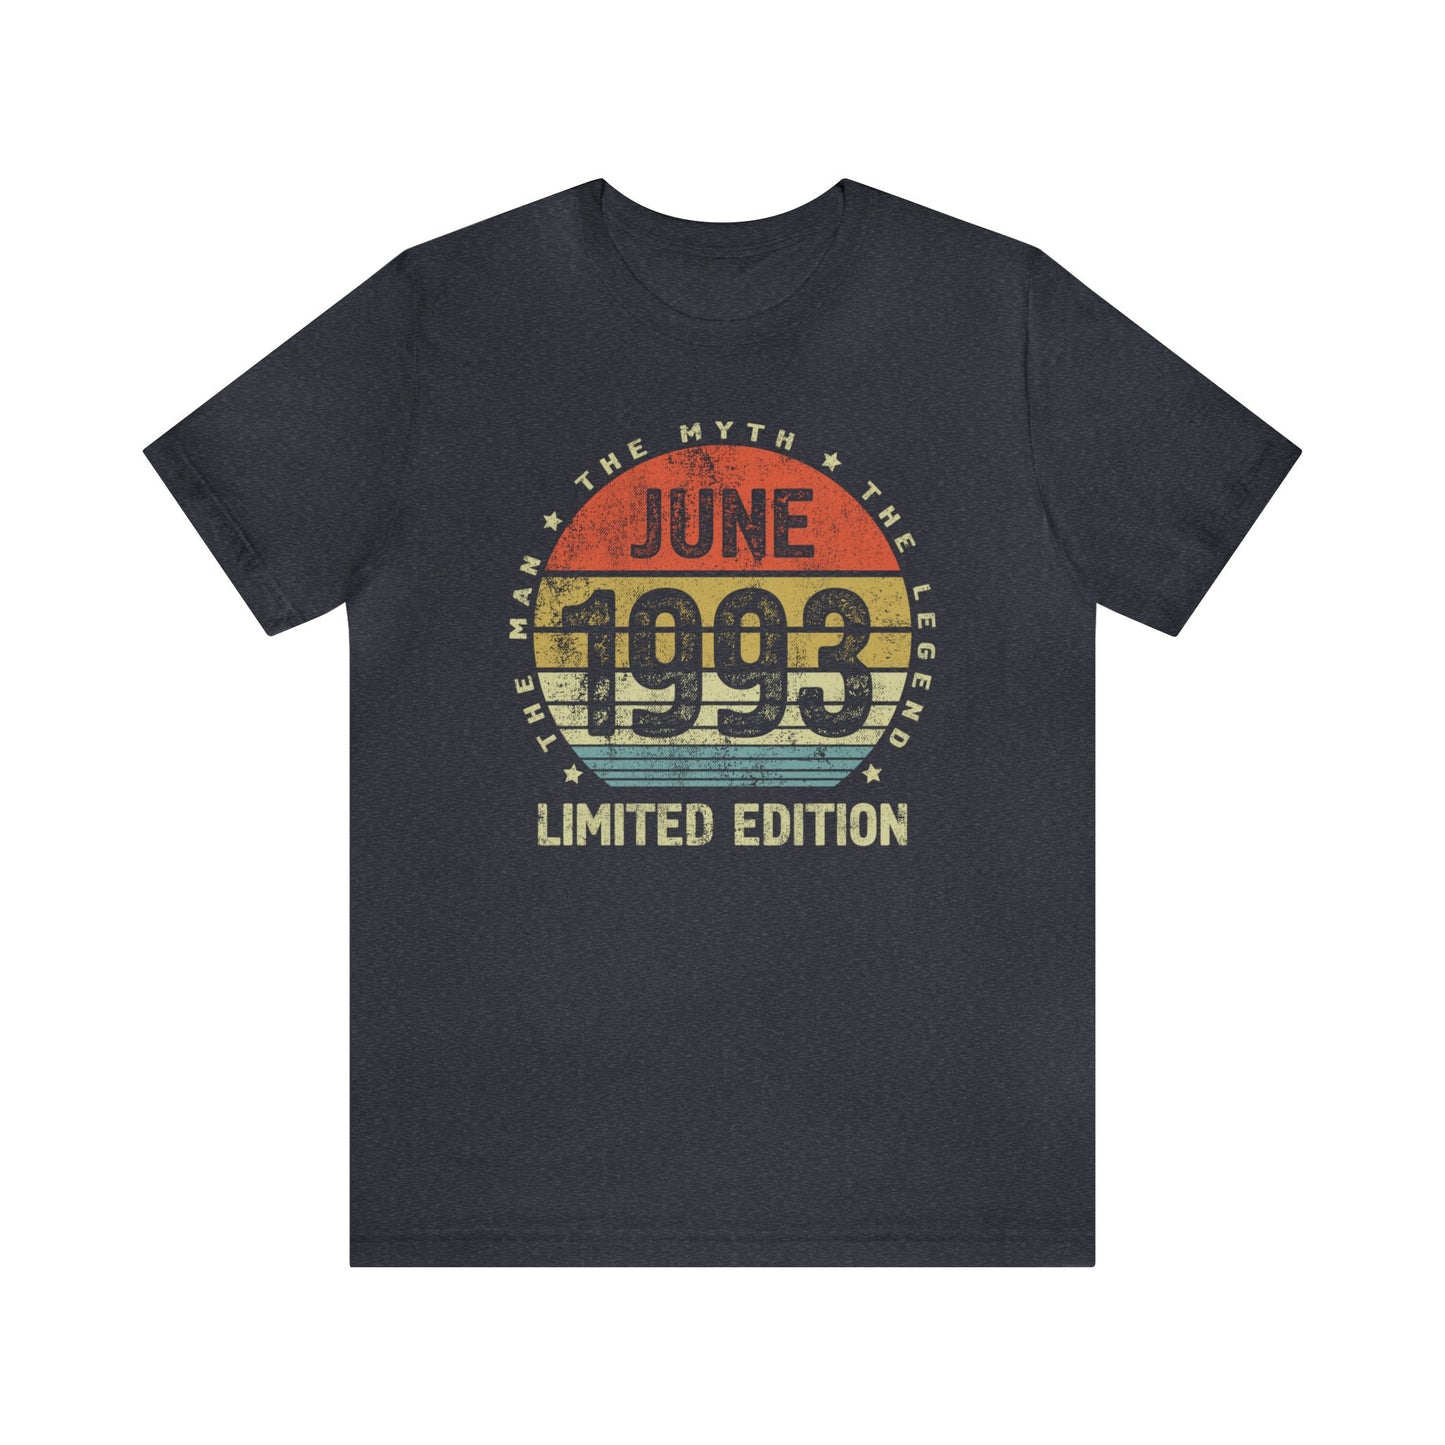 June 1993 birthday gift t-shirt for men or husband, birthday gift shirt for son or brother